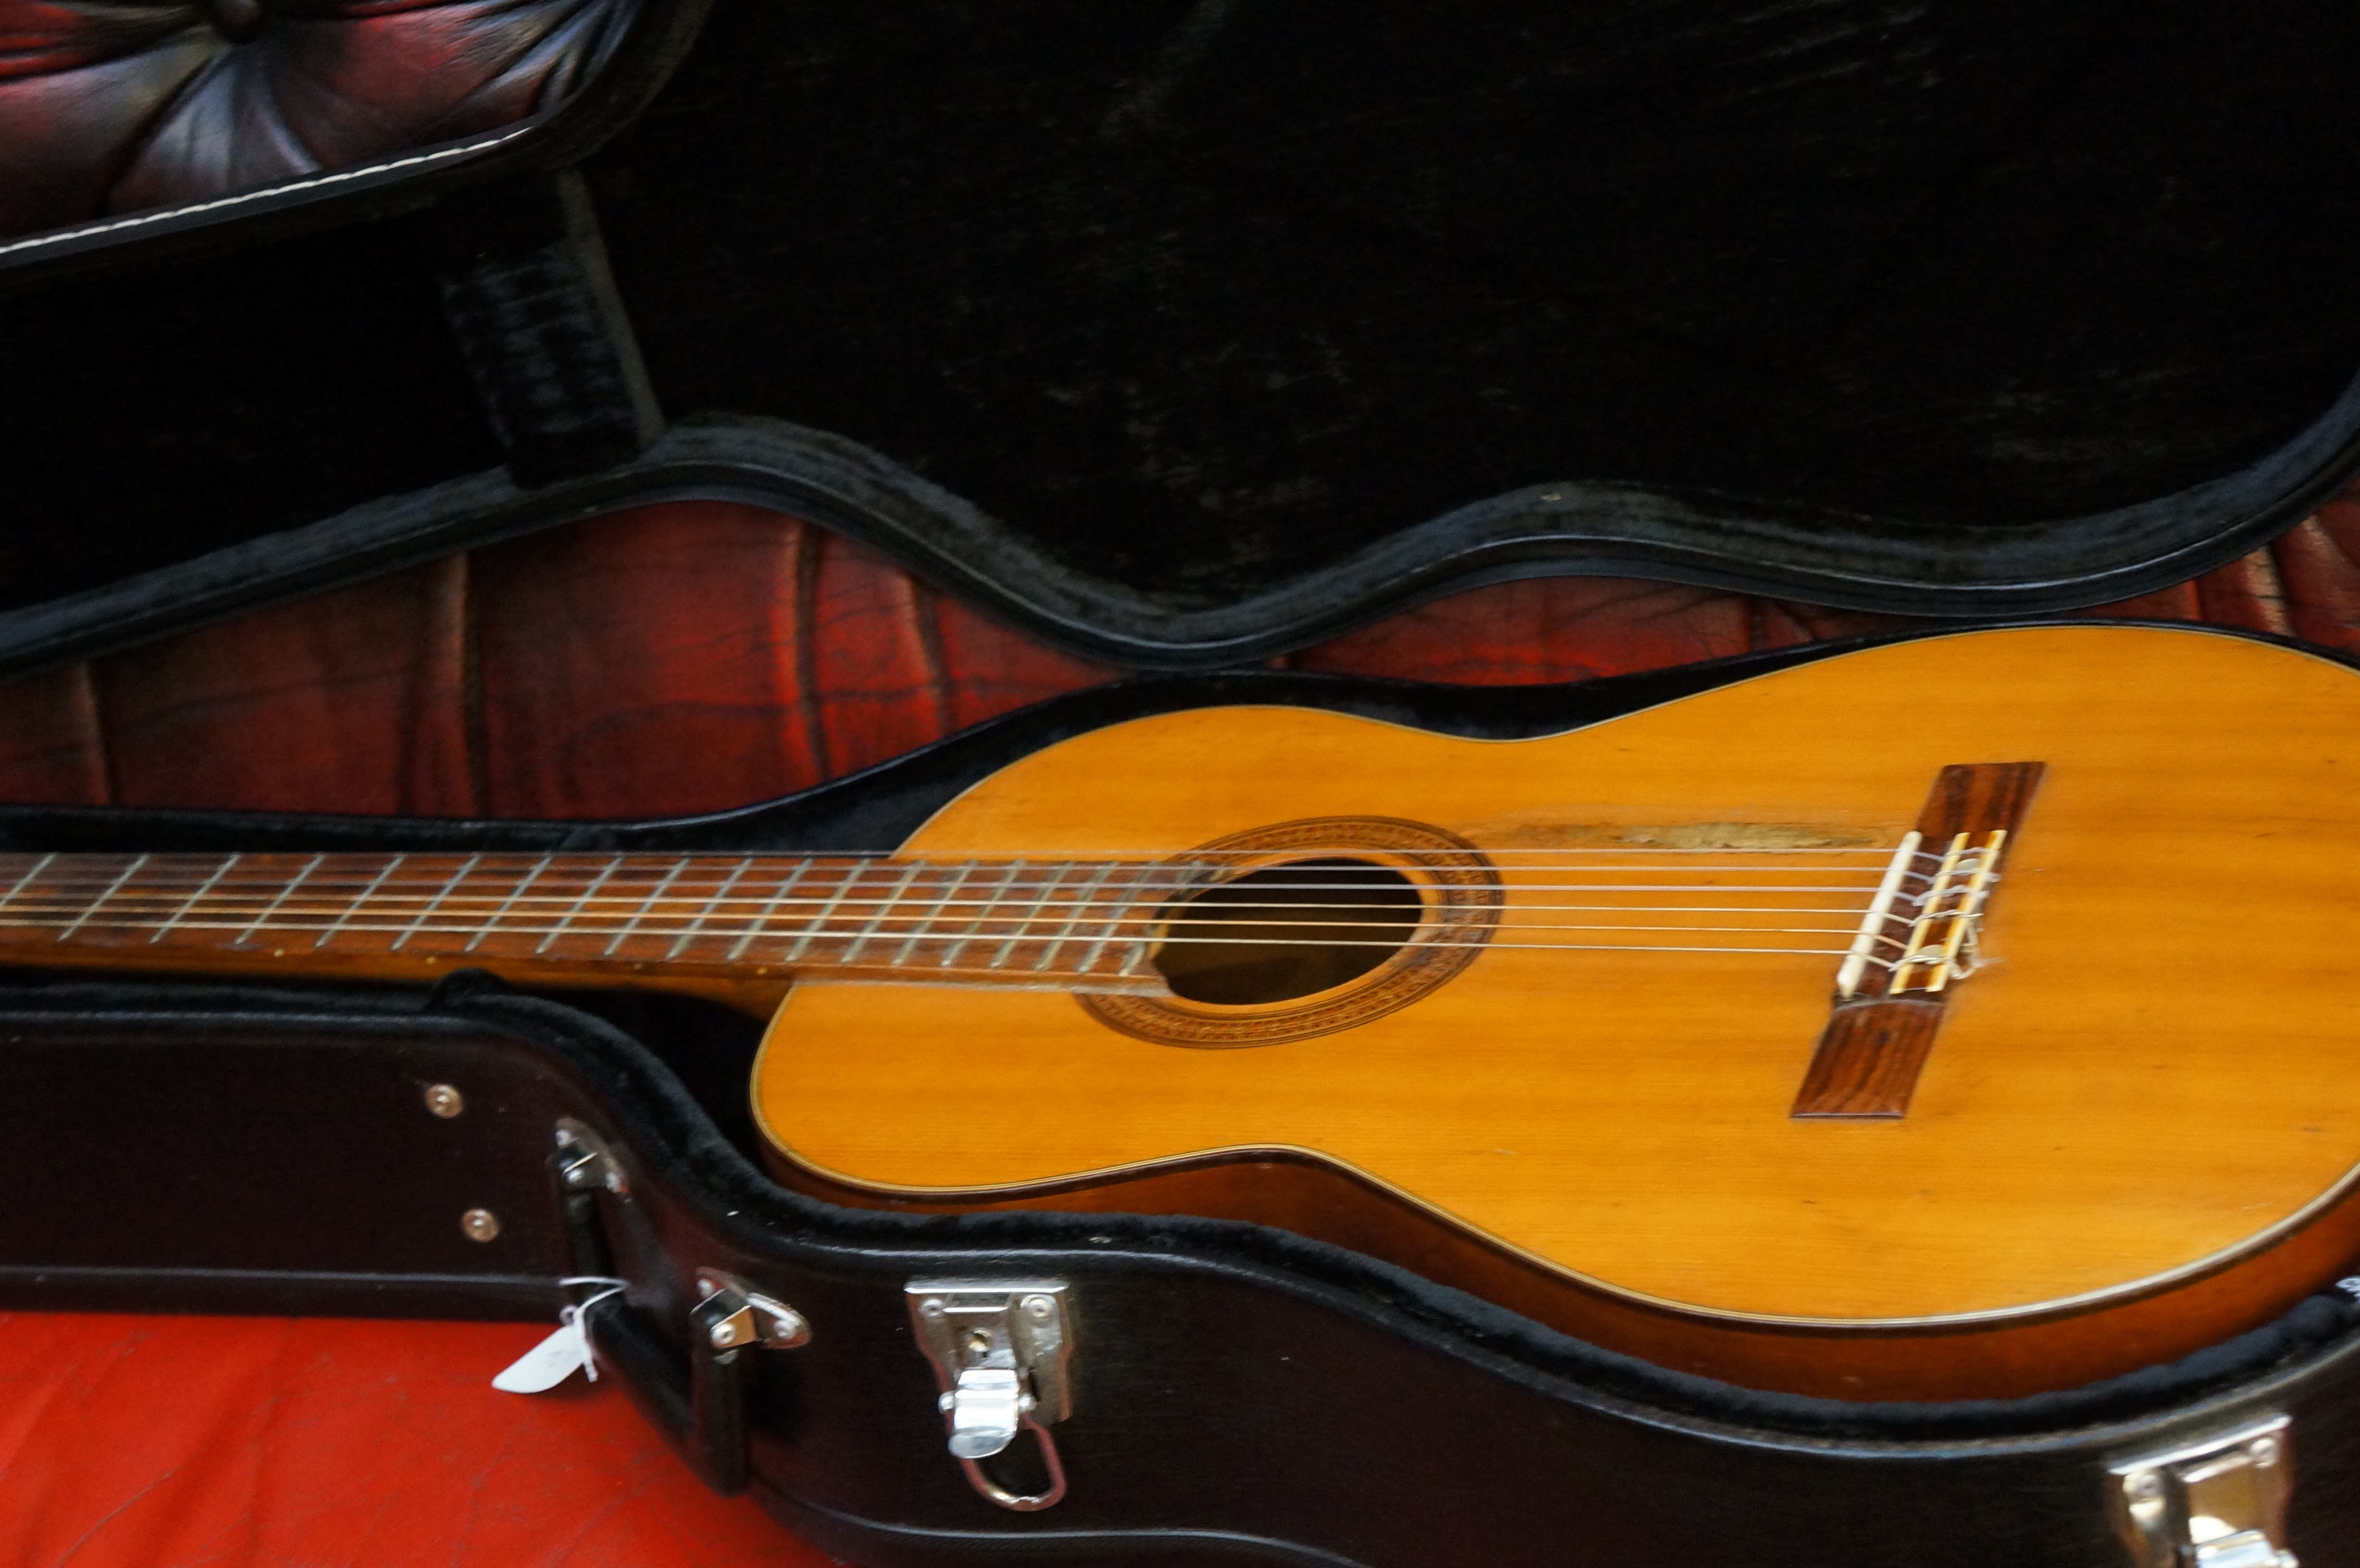 Antoria classic guitar in plush fitted hard case